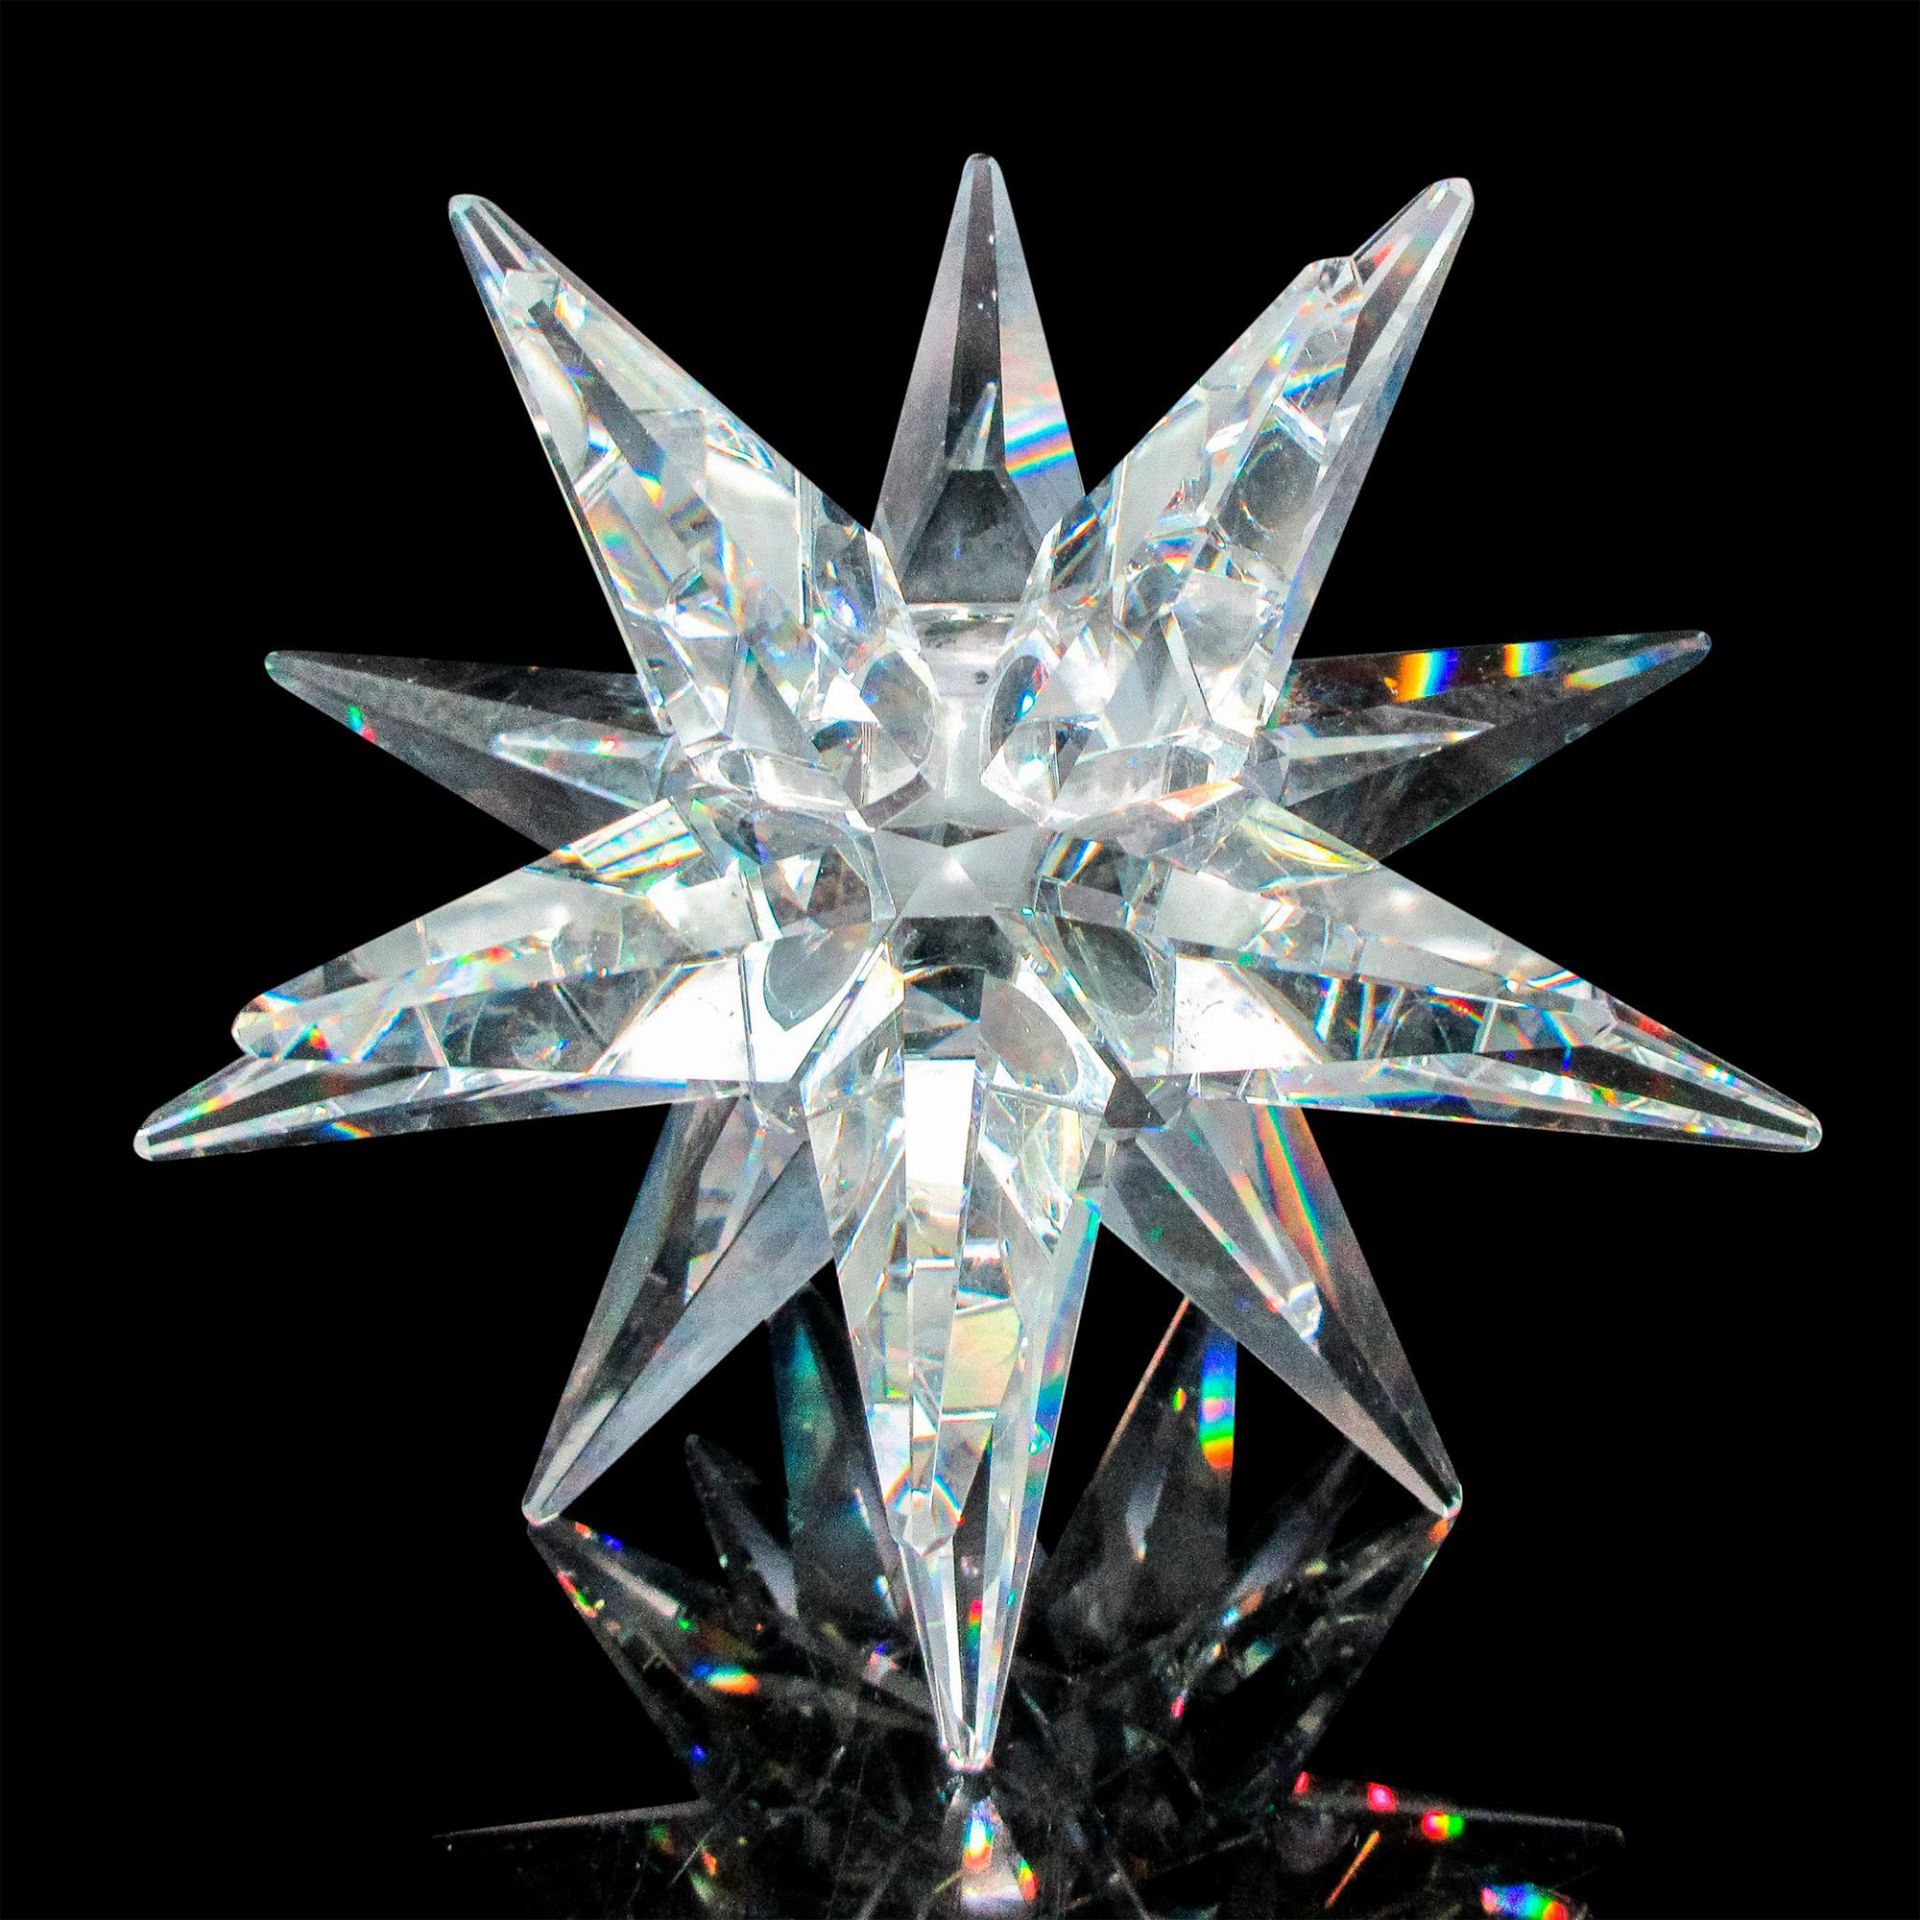 Swarovski Crystal Star Candle Holder - Image 4 of 5